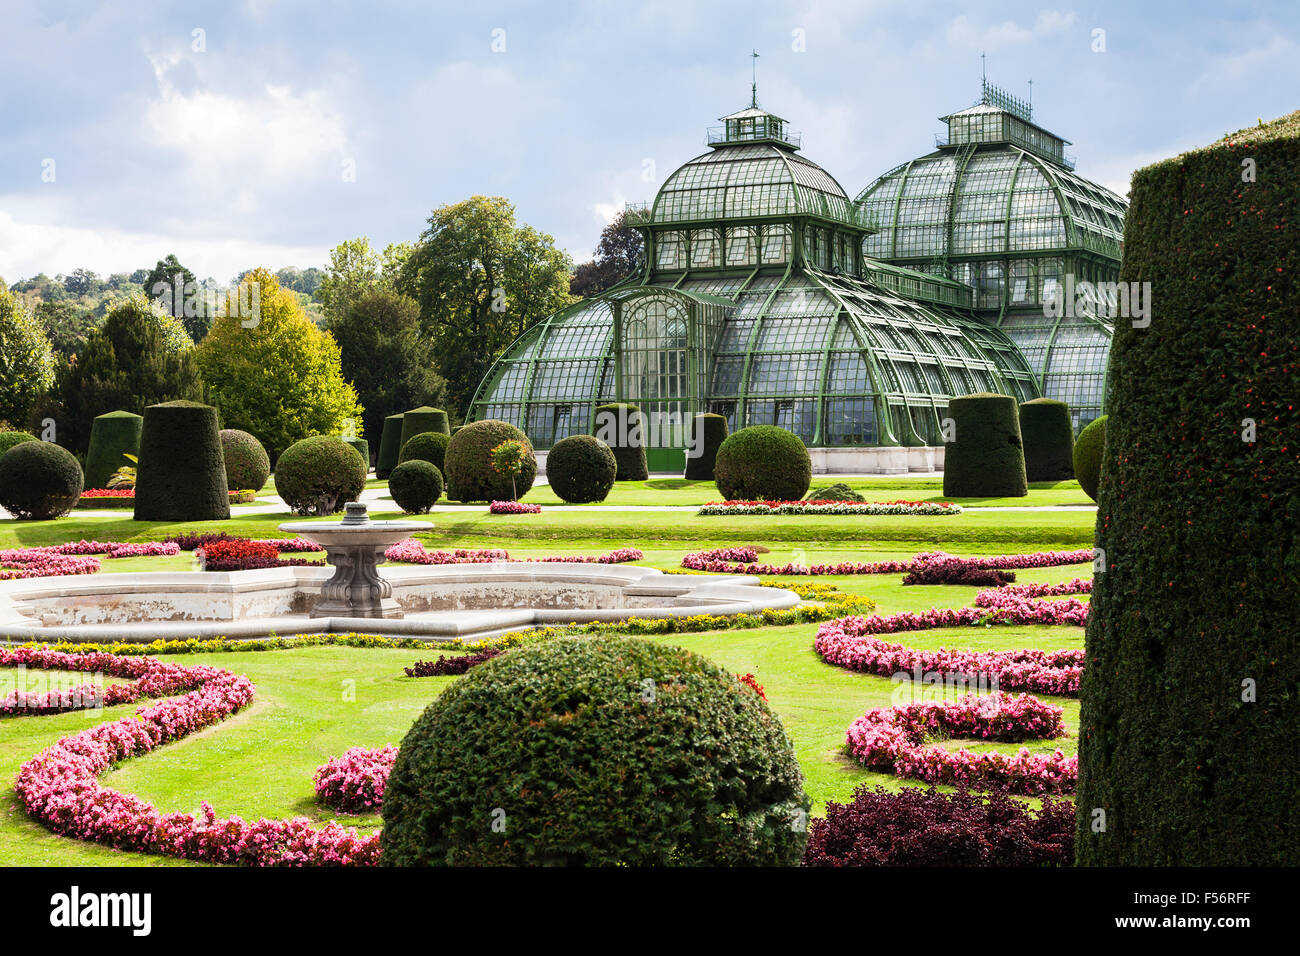 Viaggiare per la città di Vienna - padiglione Palmenhaus, grande serra in giardino di Schloss Schonbrunn Palace, Vienna, Austria Foto Stock